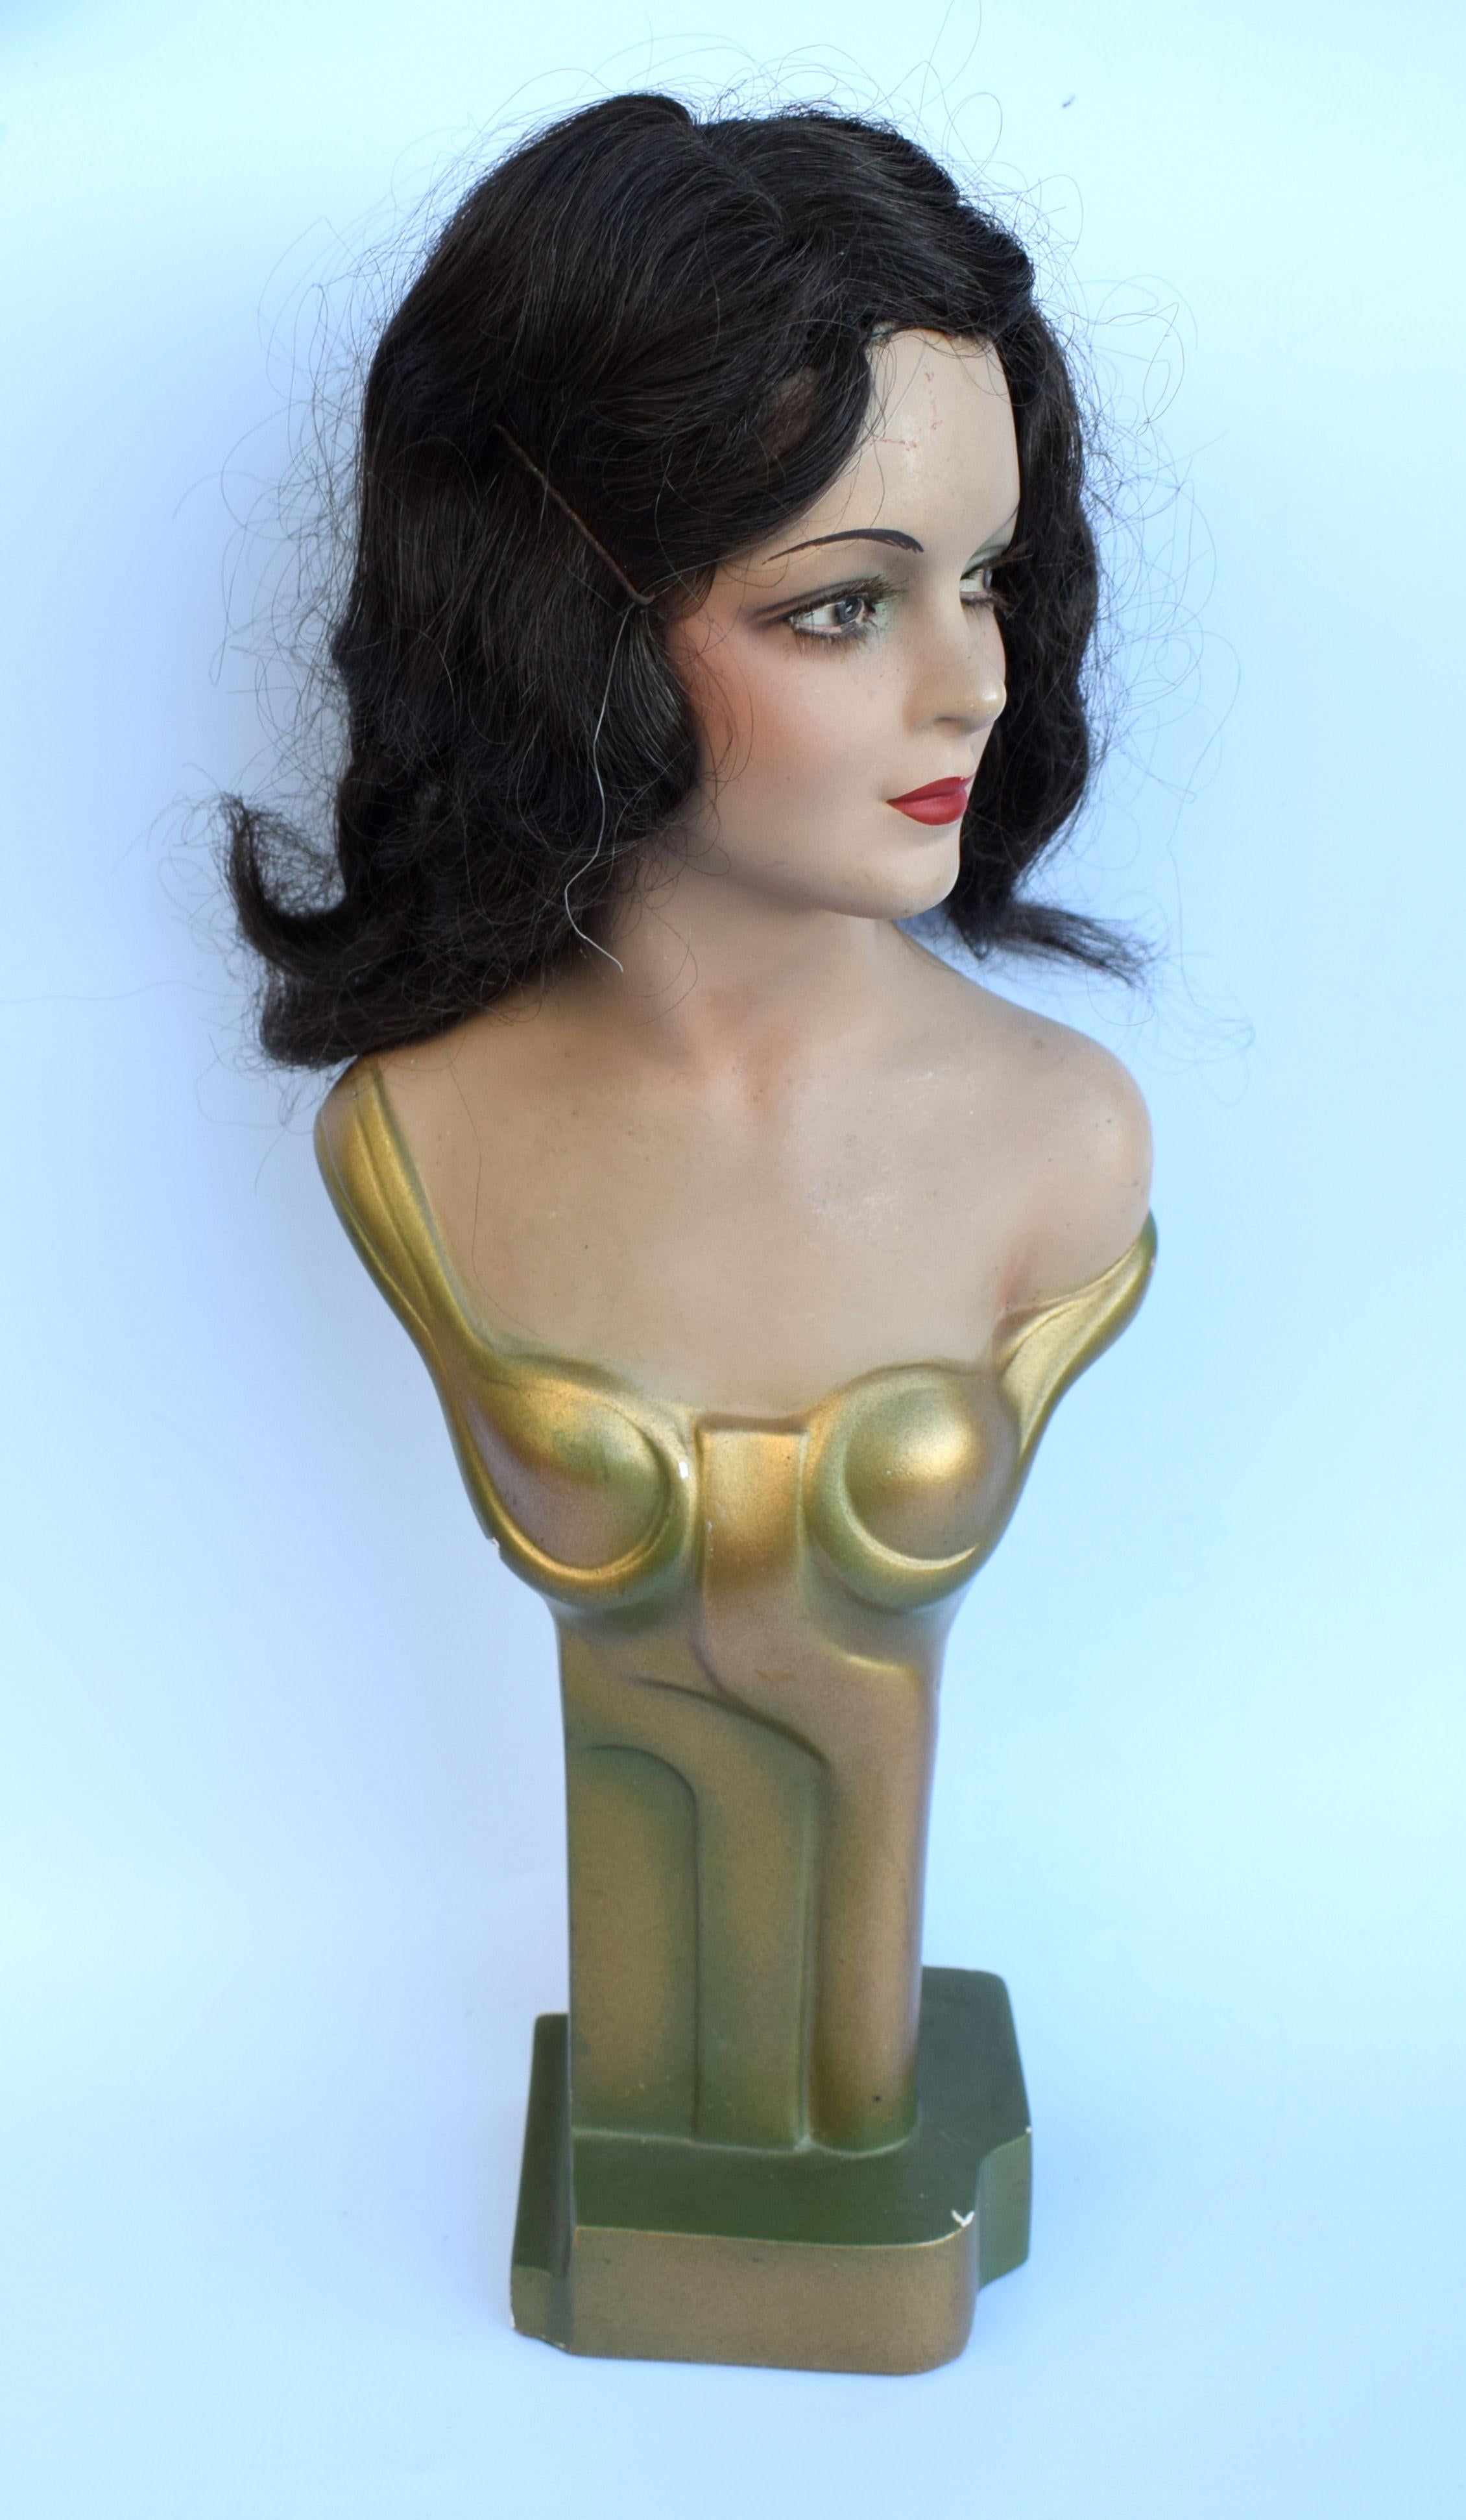 Merveilleux mannequin de comptoir publicitaire féminin Art Déco des années 1930, tout à fait original et très élégant. Elle est faite de plâtre creusé et a une base en carton dur. Ayant été très habilement et magnifiquement peinte, son maquillage